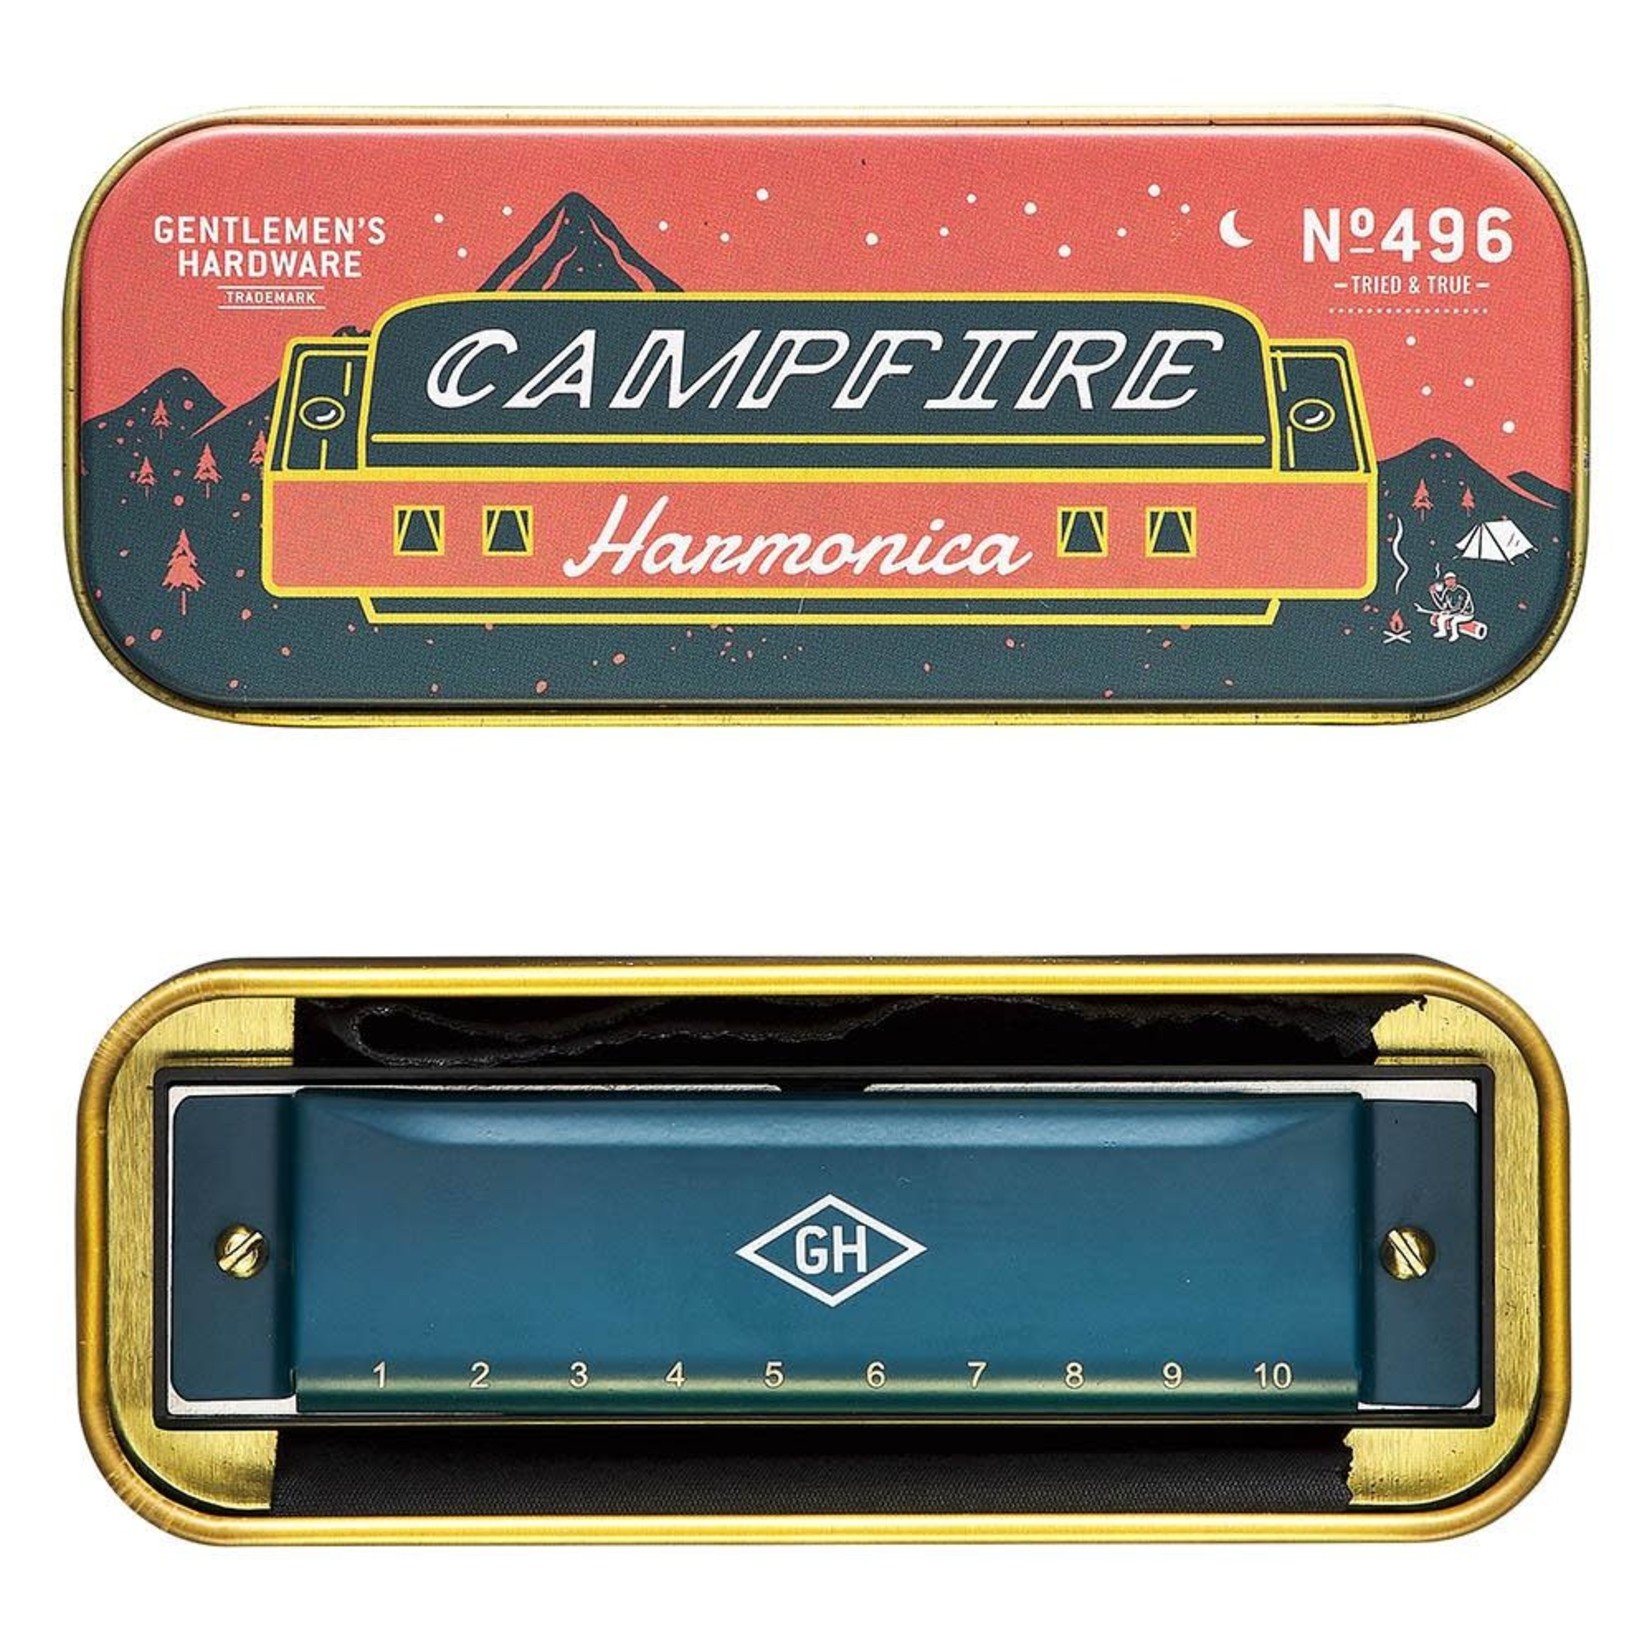 Gentlemen's Hardware Gentlemen's Hardware Campfire Harmonica